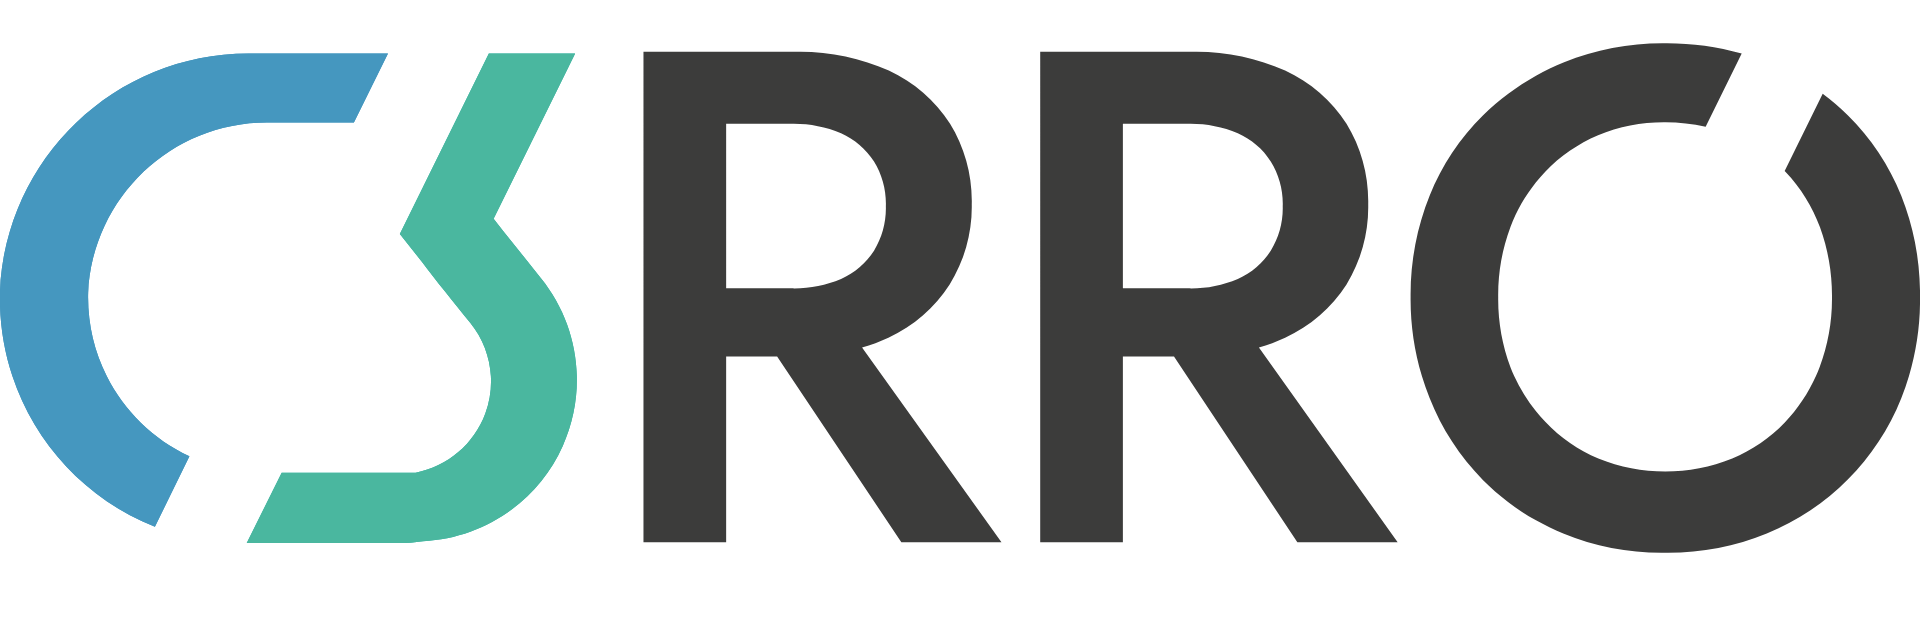 Logo der C3RRO Produkte